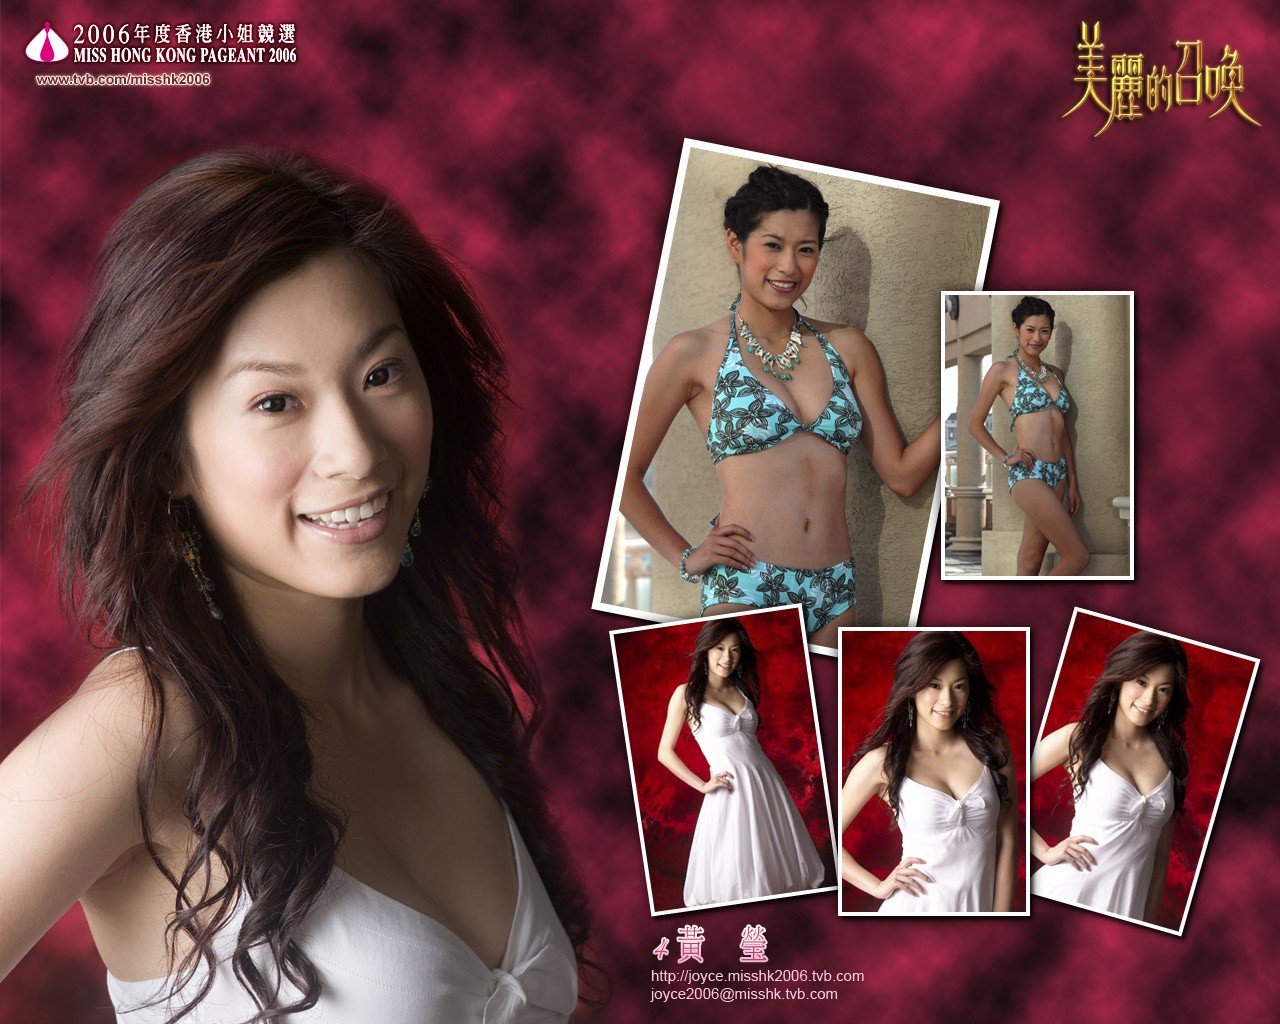 Miss Hong Kong 2006 Album #13 - 1280x1024